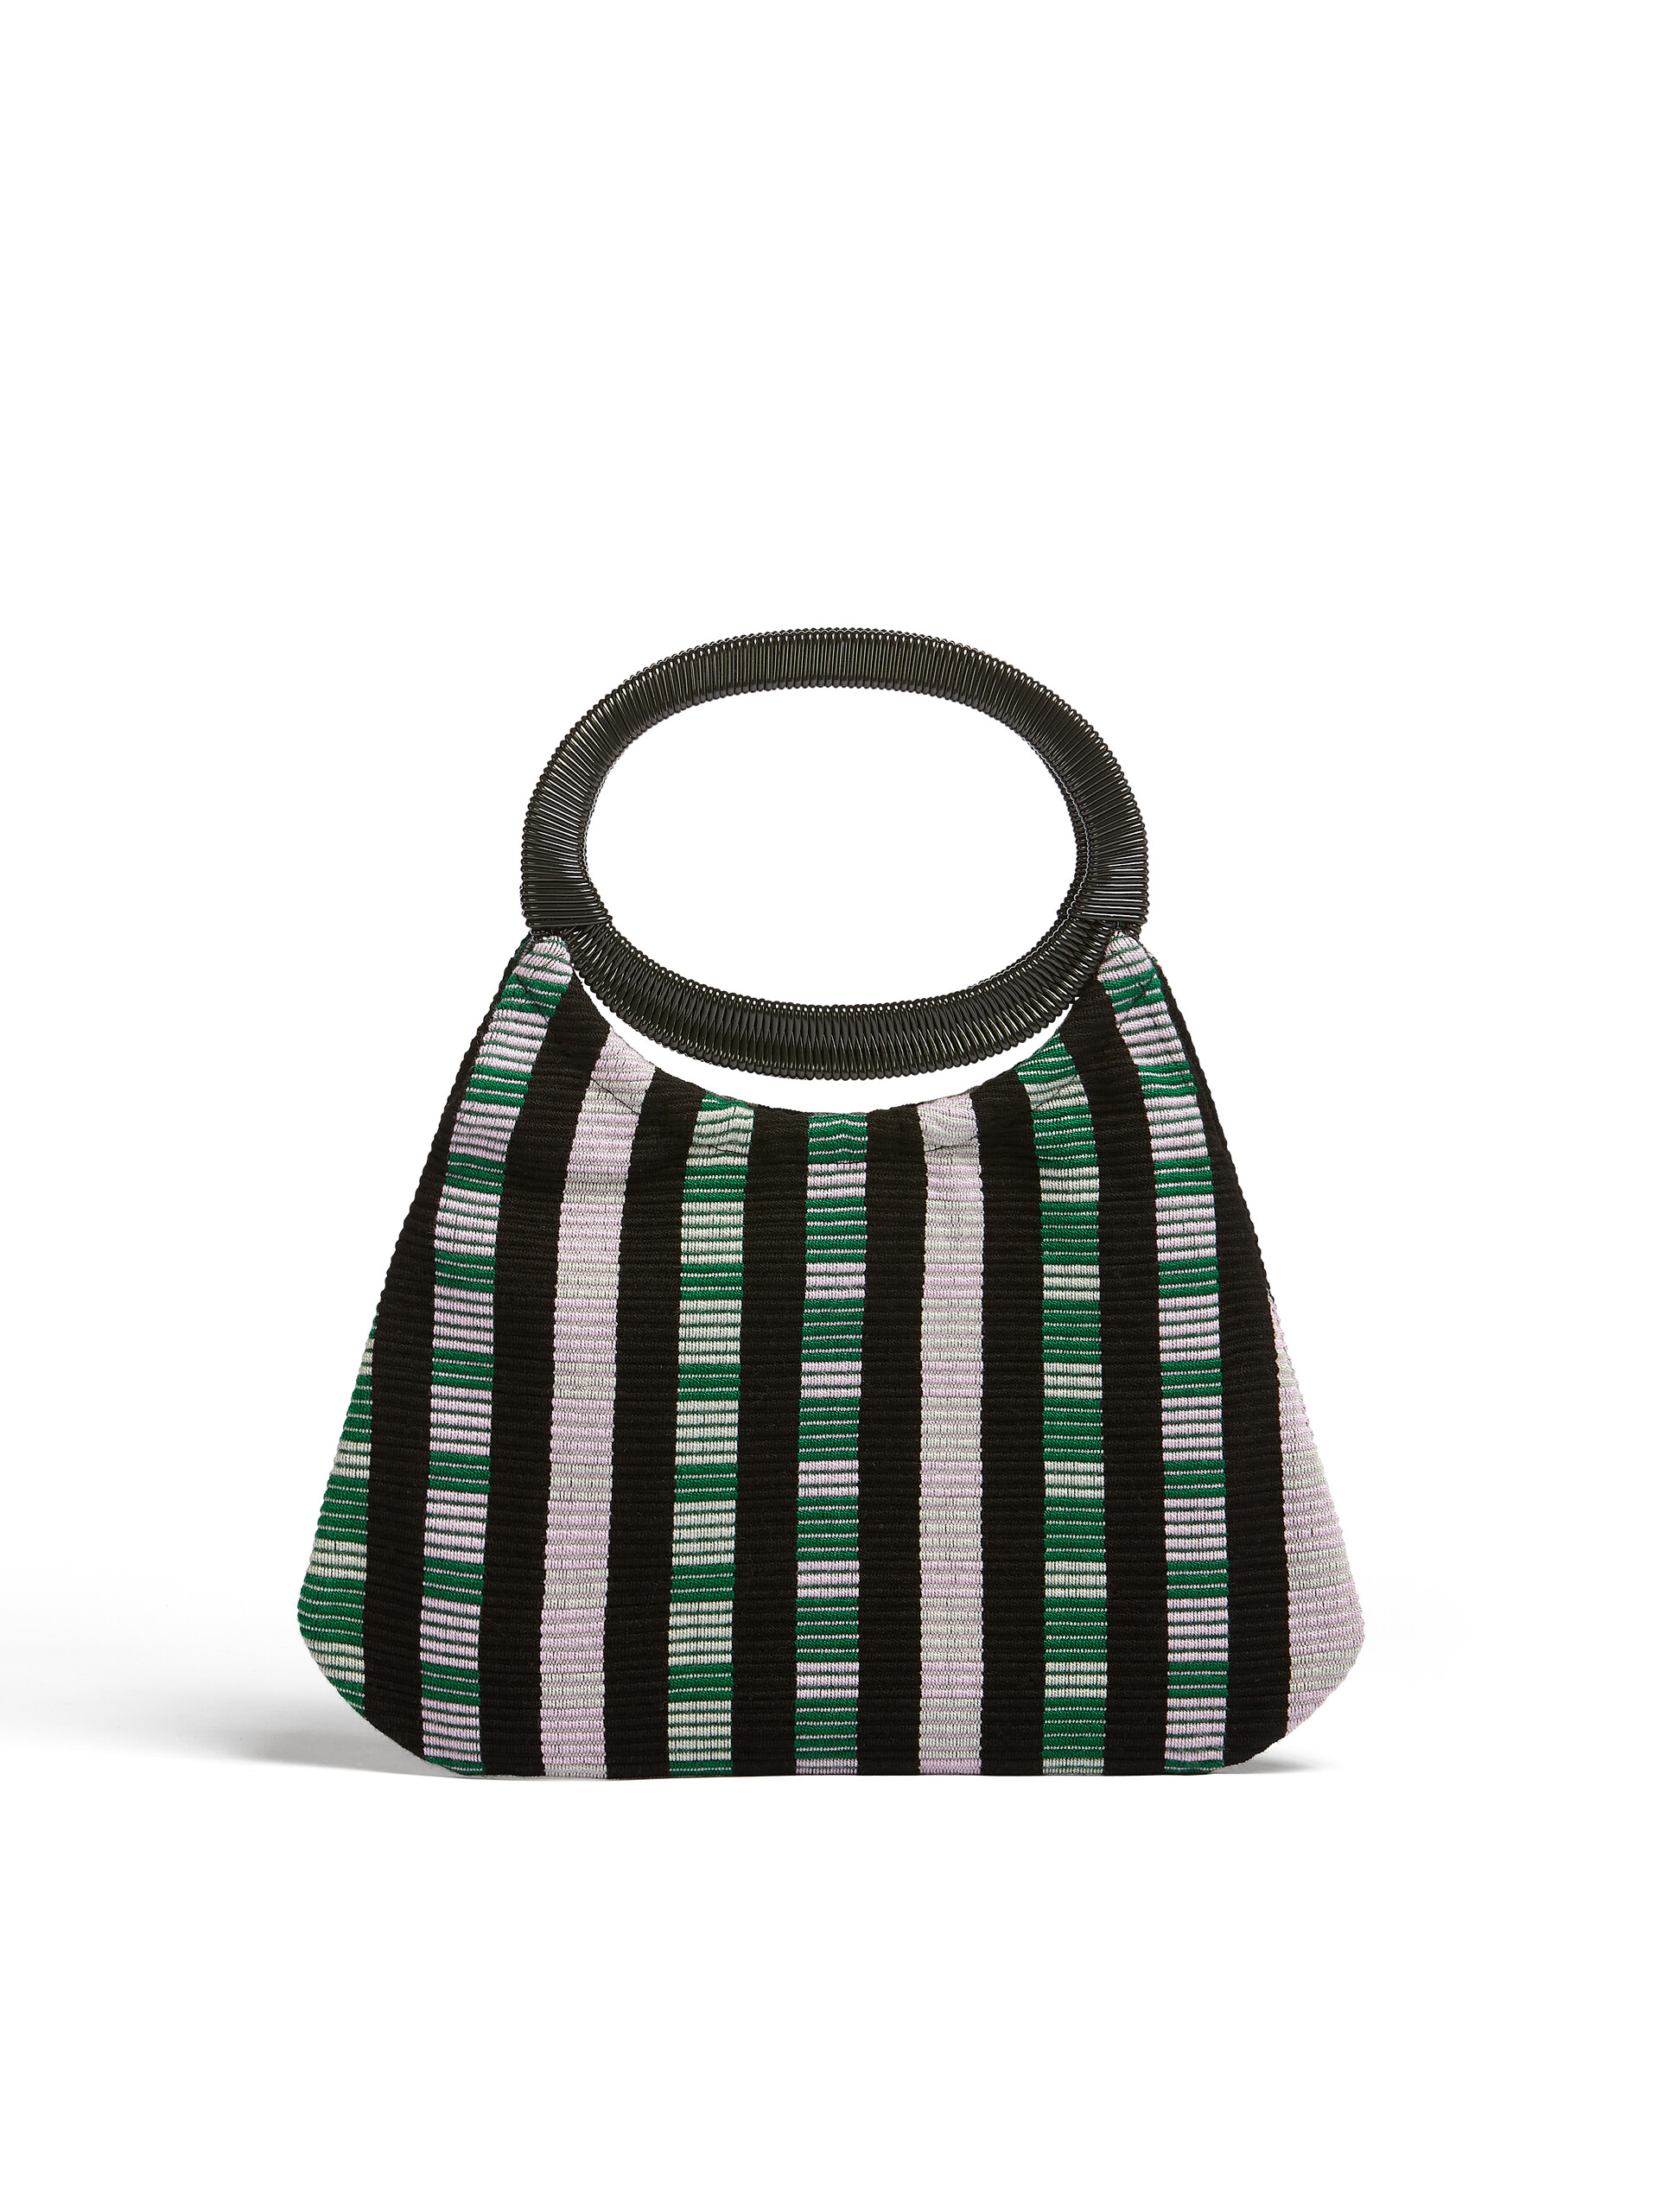 MARNI MARKET BOAT bag in multicolor lilac striped cotton - Furniture - Image 3